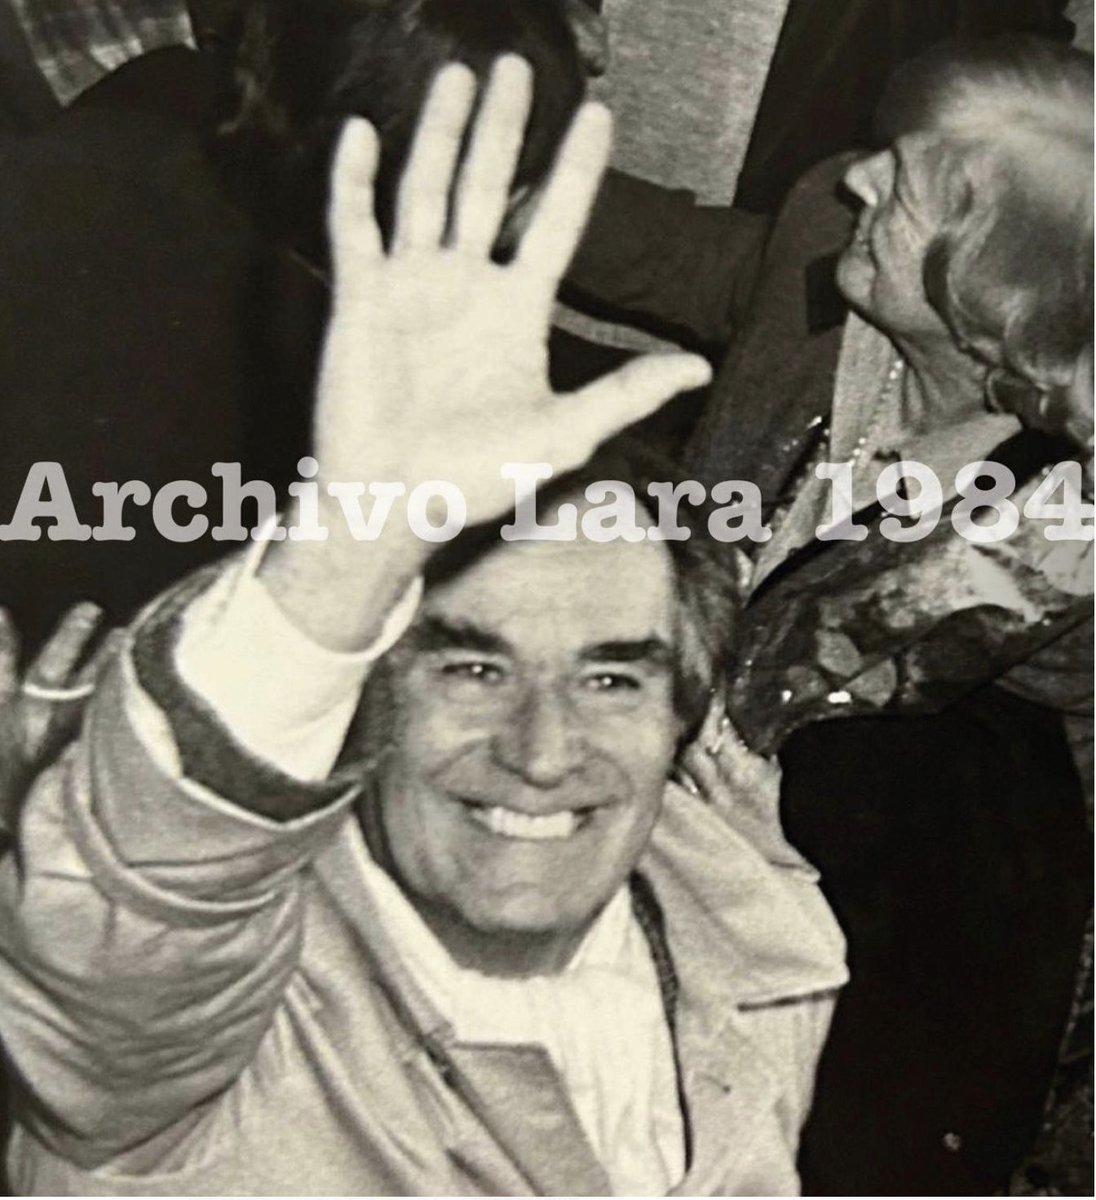 Los traidores En un artículo publicado en el El País de Madrid el 3 de marzo de 1983, Wilson Ferreira Aldunate, entonces en el exilio, se refirió a 'Uruguay y sus mitos oficiales' con definiciones muy contundentes que desmienten con claridad posiciones 'radicales' que luego le…